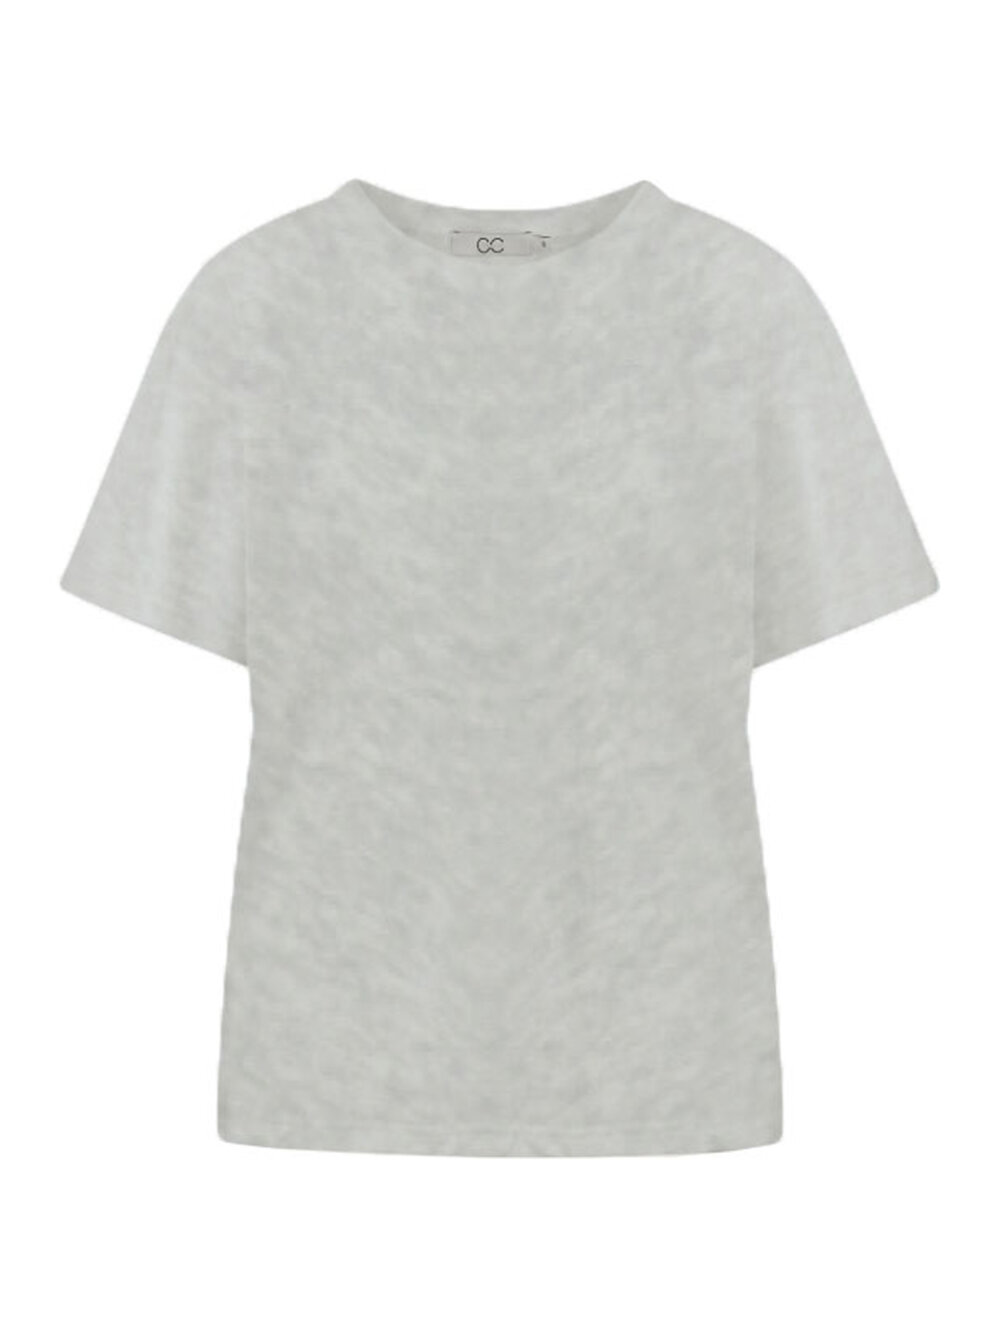 Coster Copenhagen - Basic T-shirt